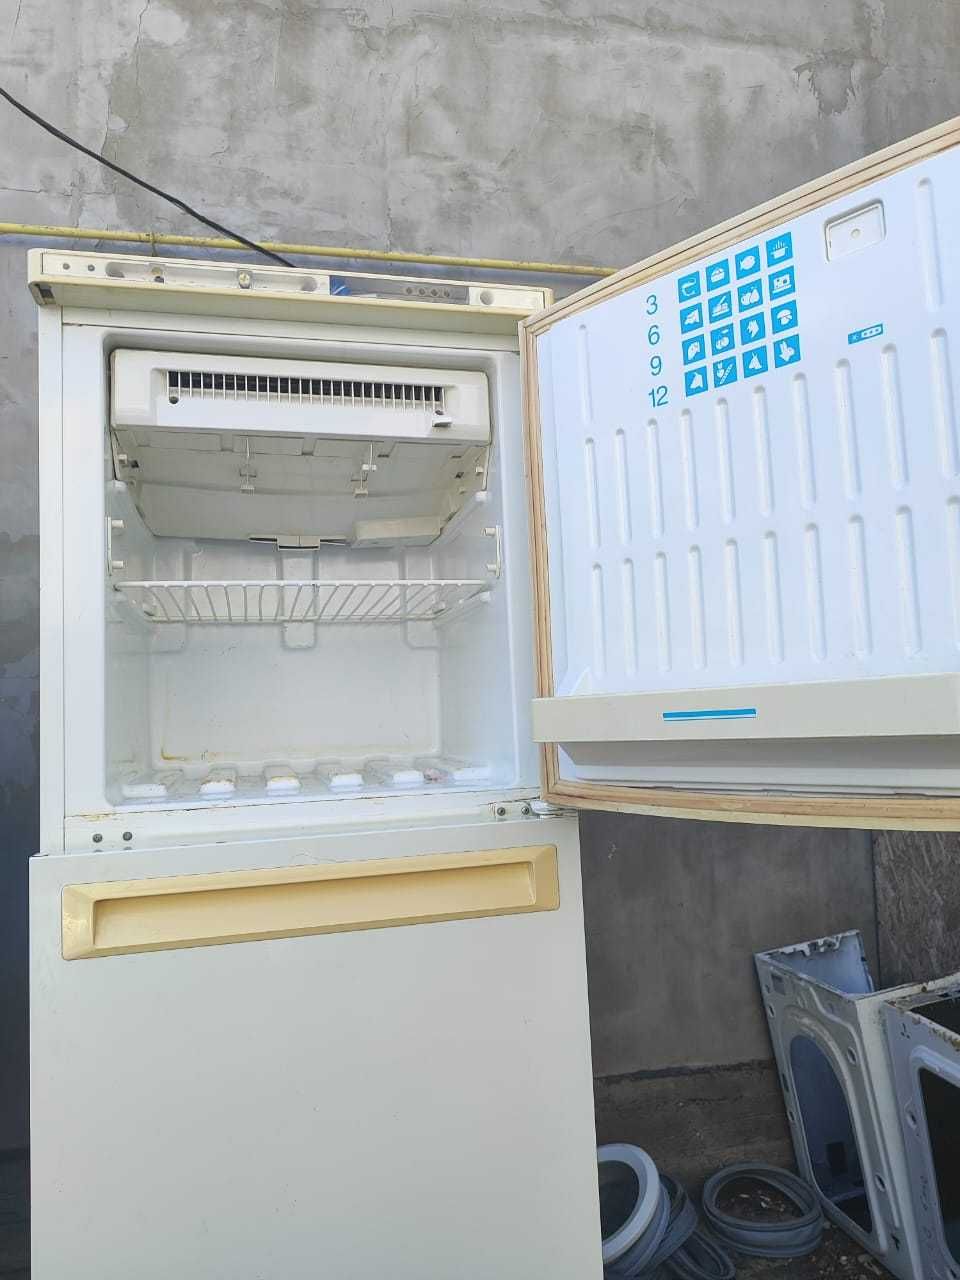 Холодильник Stinol 2 метра высота трёх камерный